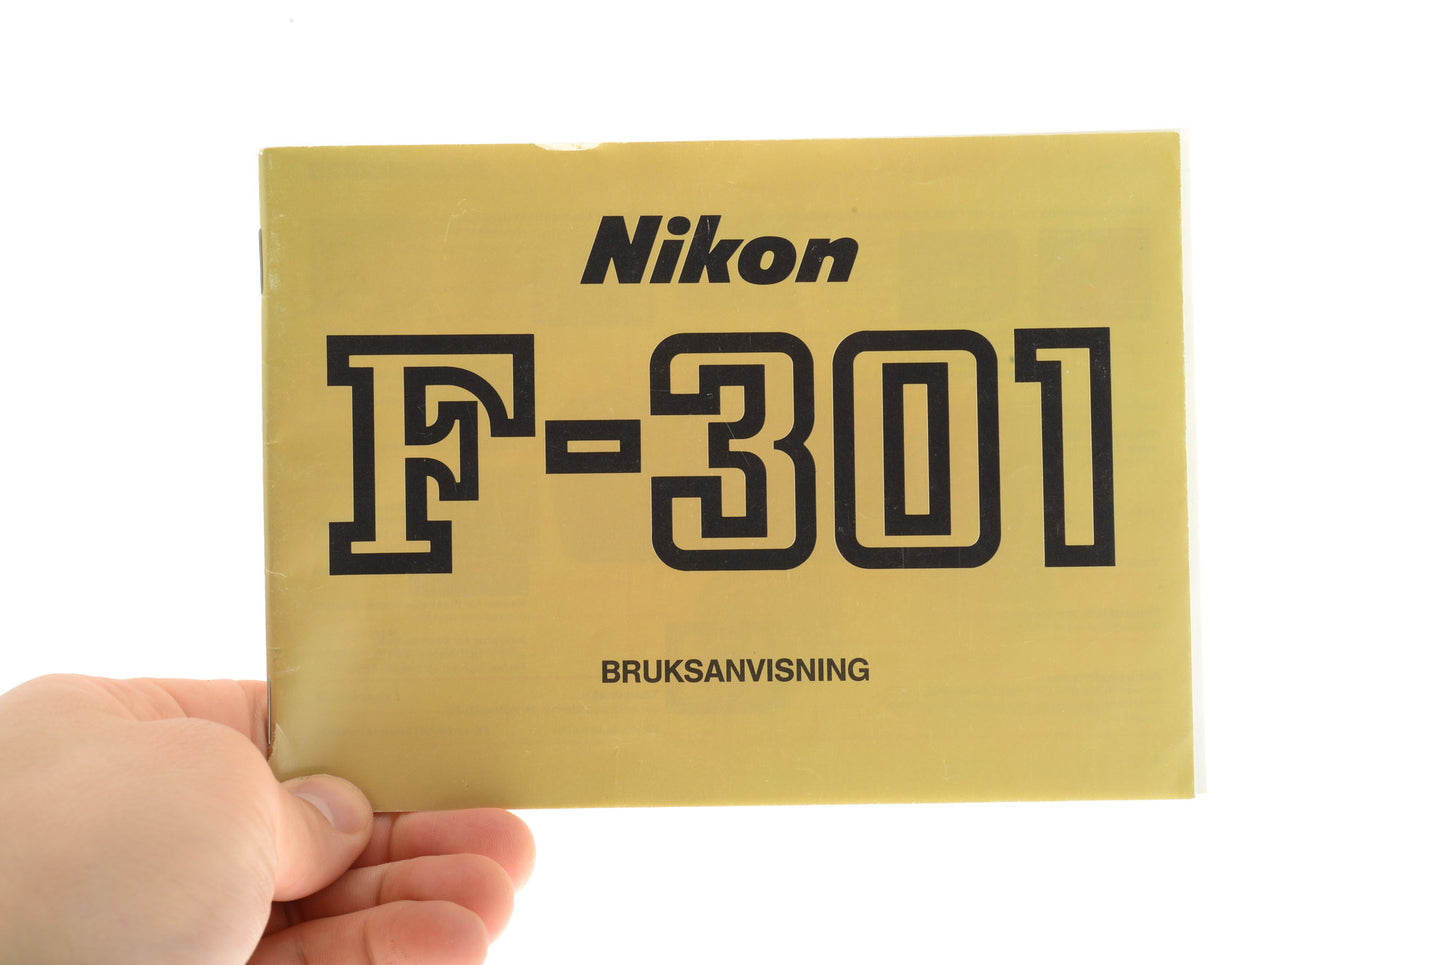 Nikon F-301 Bruksanvisning